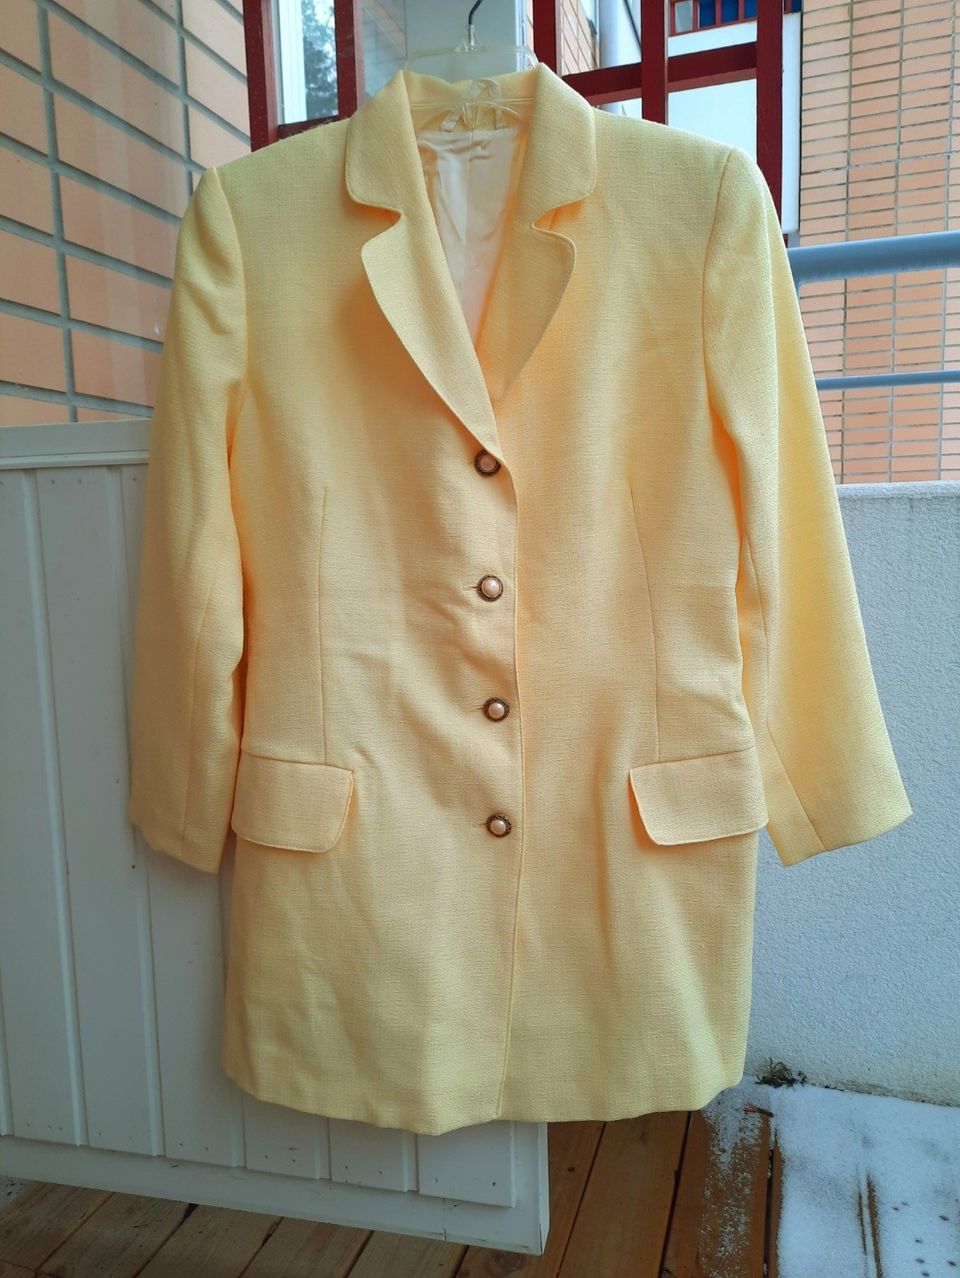 Keltainen jakku/mekko. Koko n.M